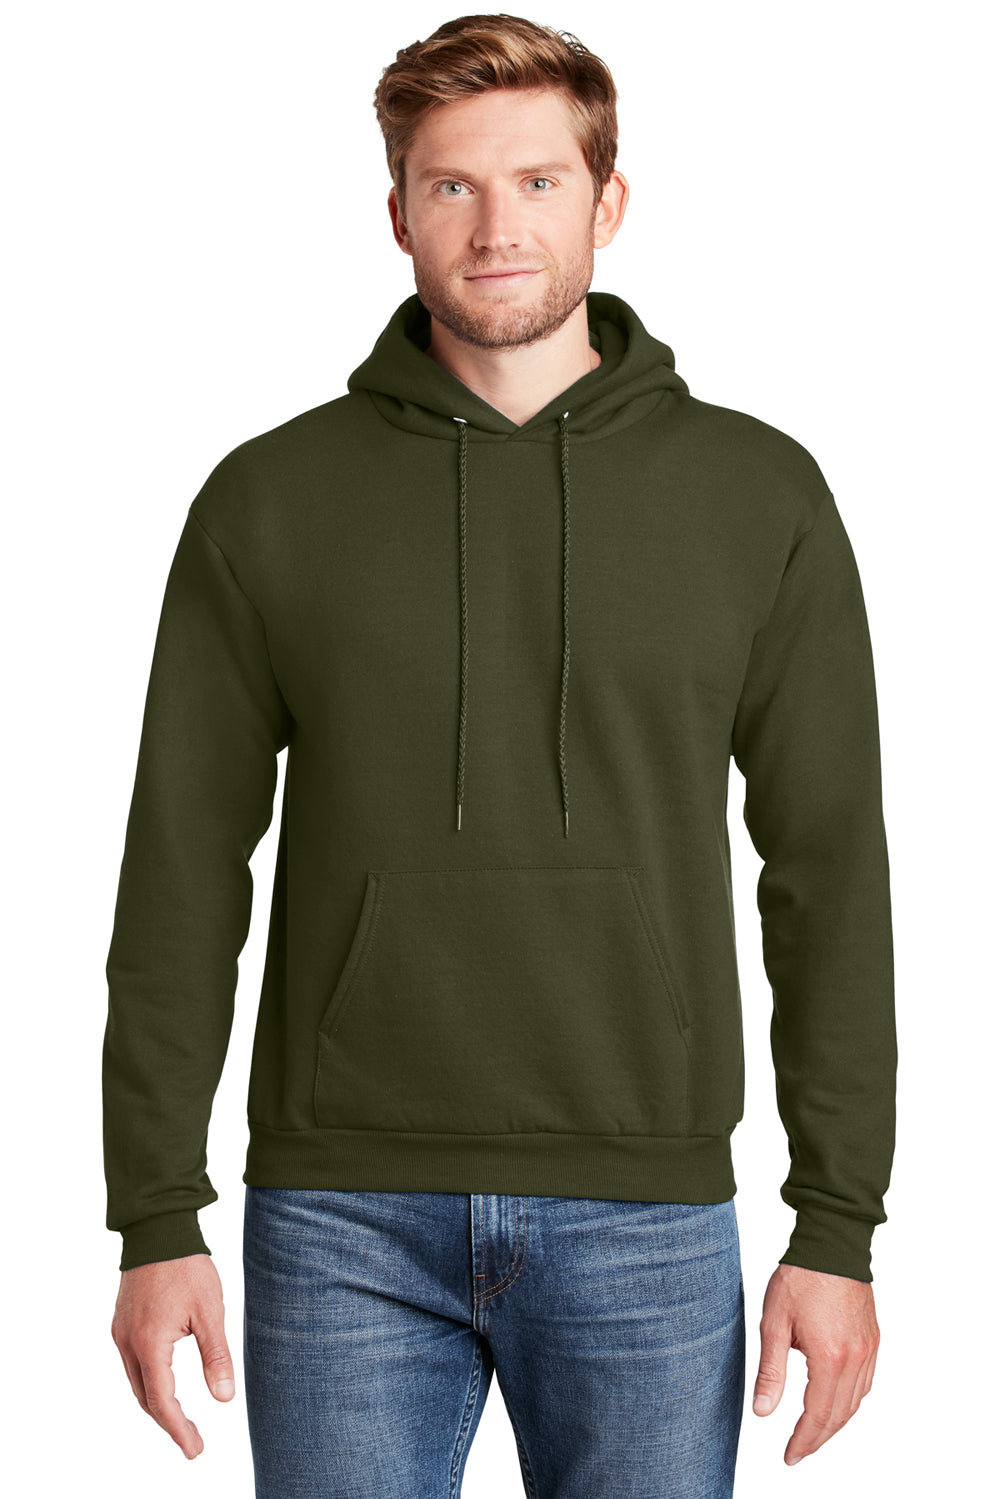 Hanes Men's EcoSmart Fleece Zip-up Hoodie, up to Size 3XL